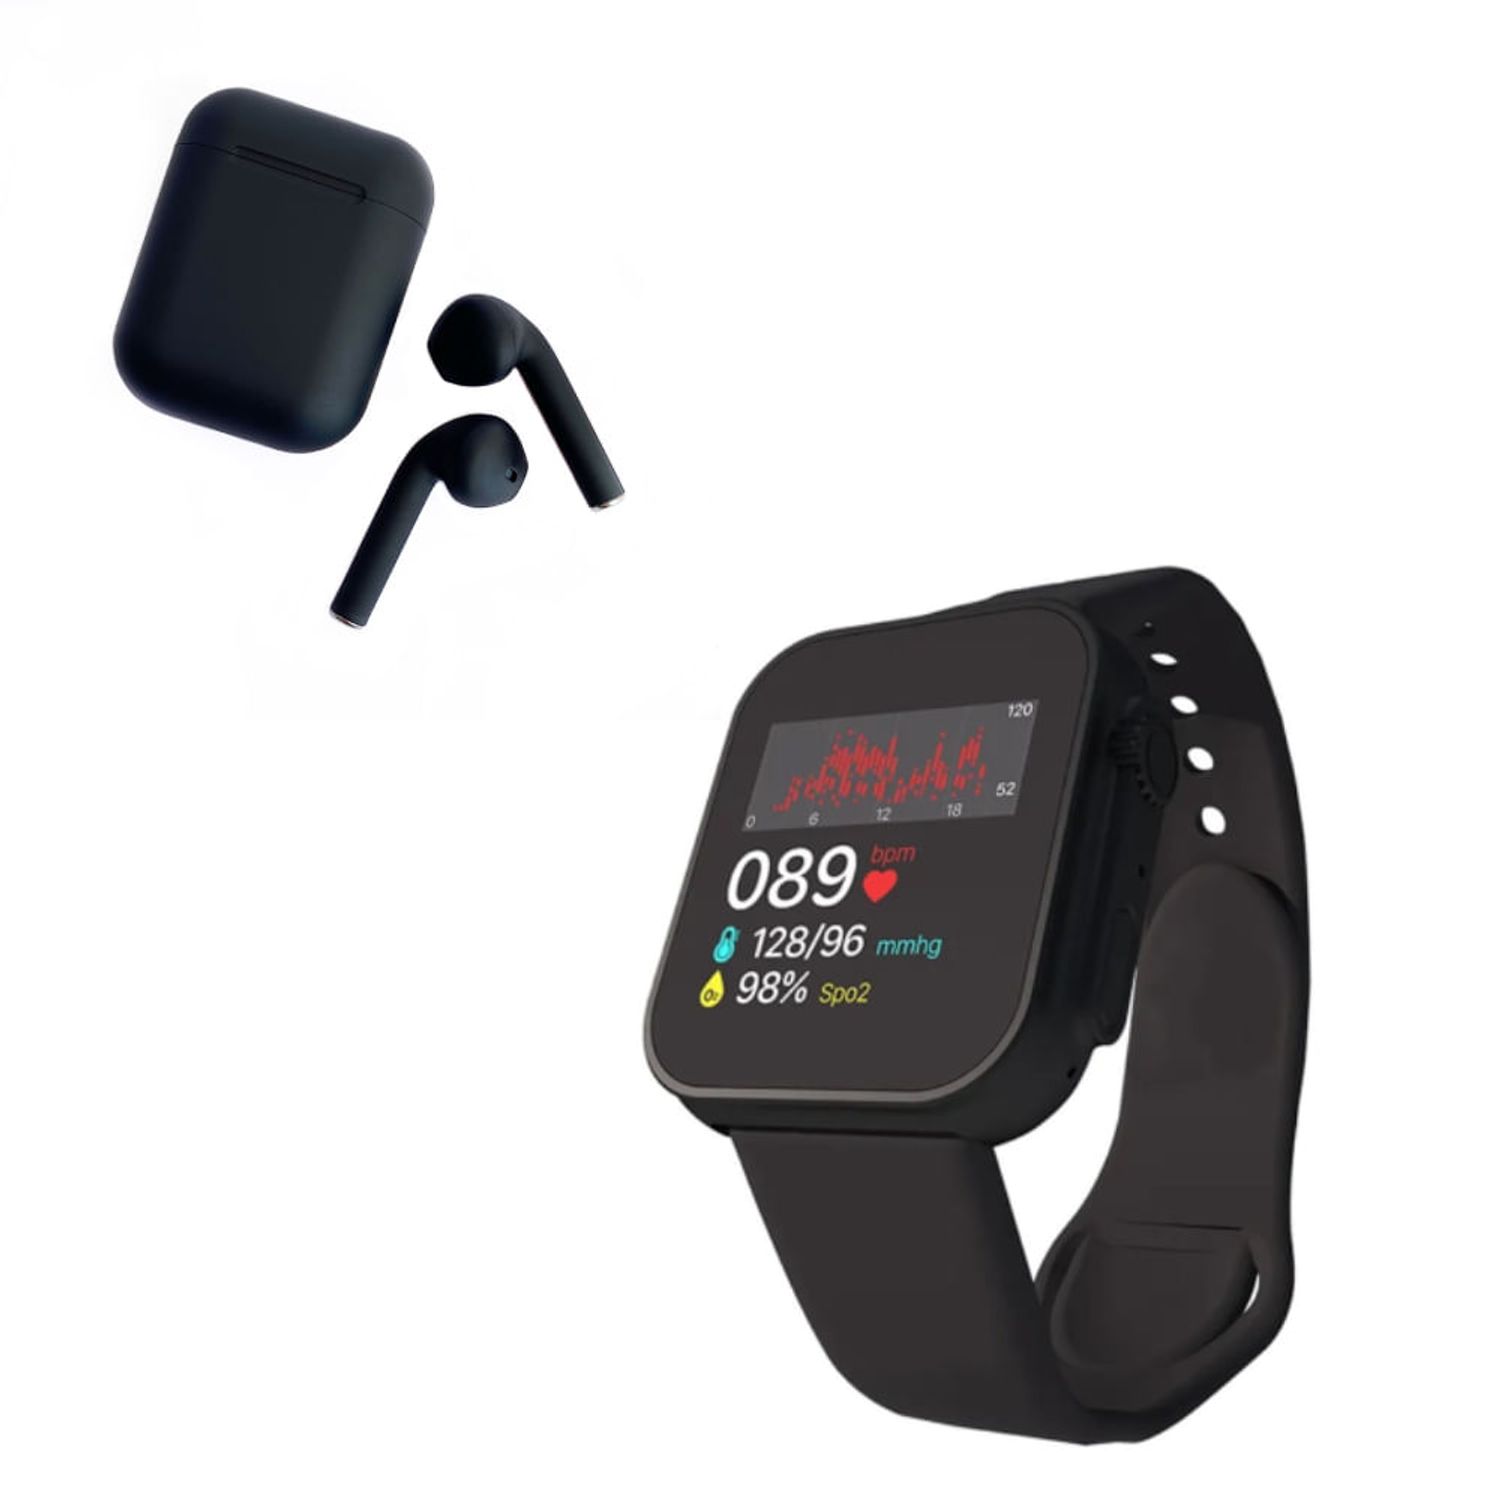 Cómo CARGAR y COLOCAR la correa del Smartwatch D20 ⌚ Rápido y Fácil 2022😎.  